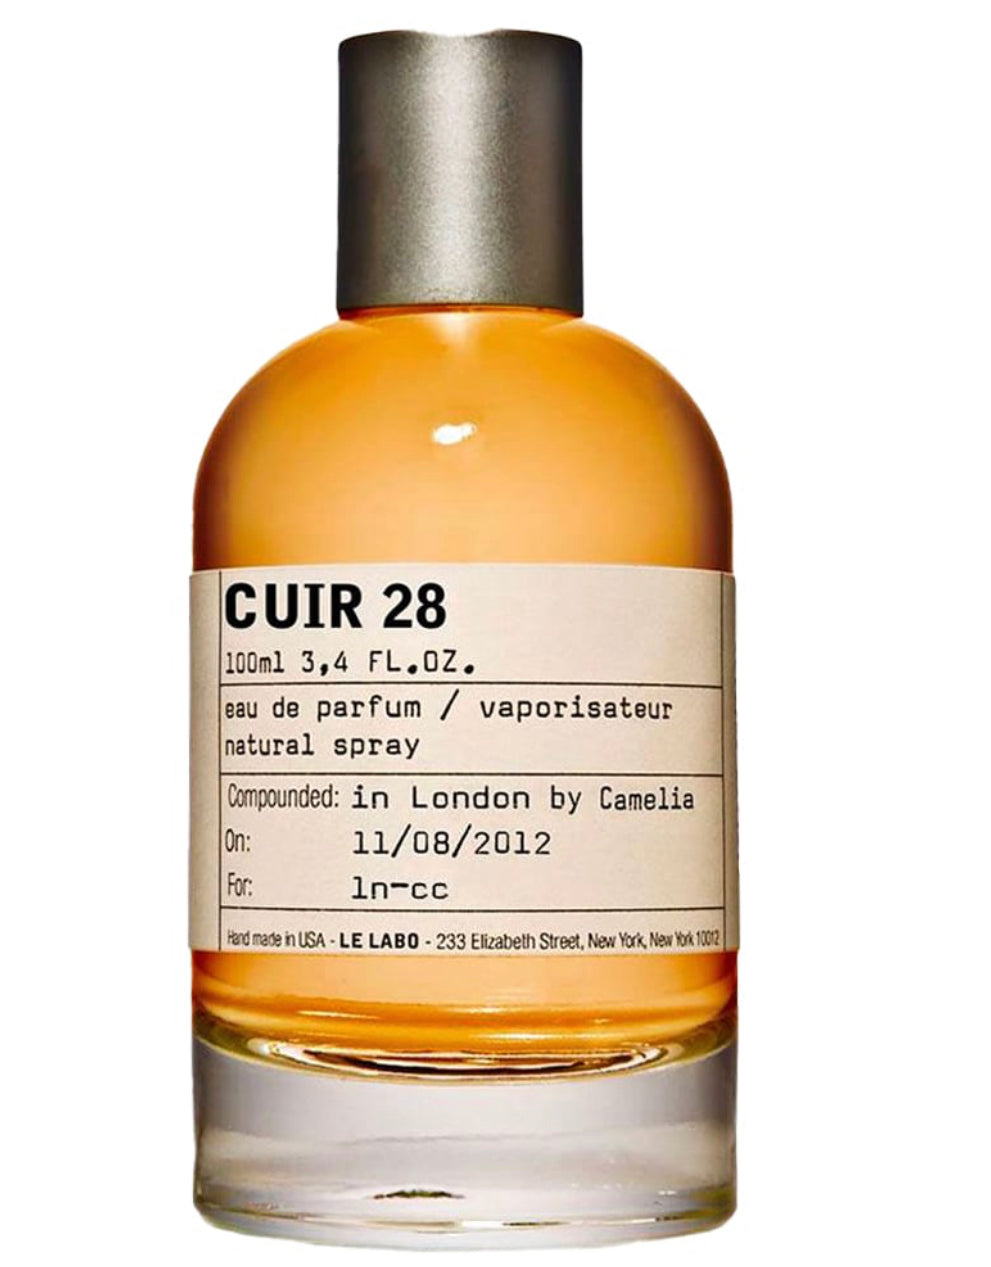 LE LABO Cuir 28 Dubai Exclusive Edition Eau De Parfum Samples – The Perfume  Sample Shop